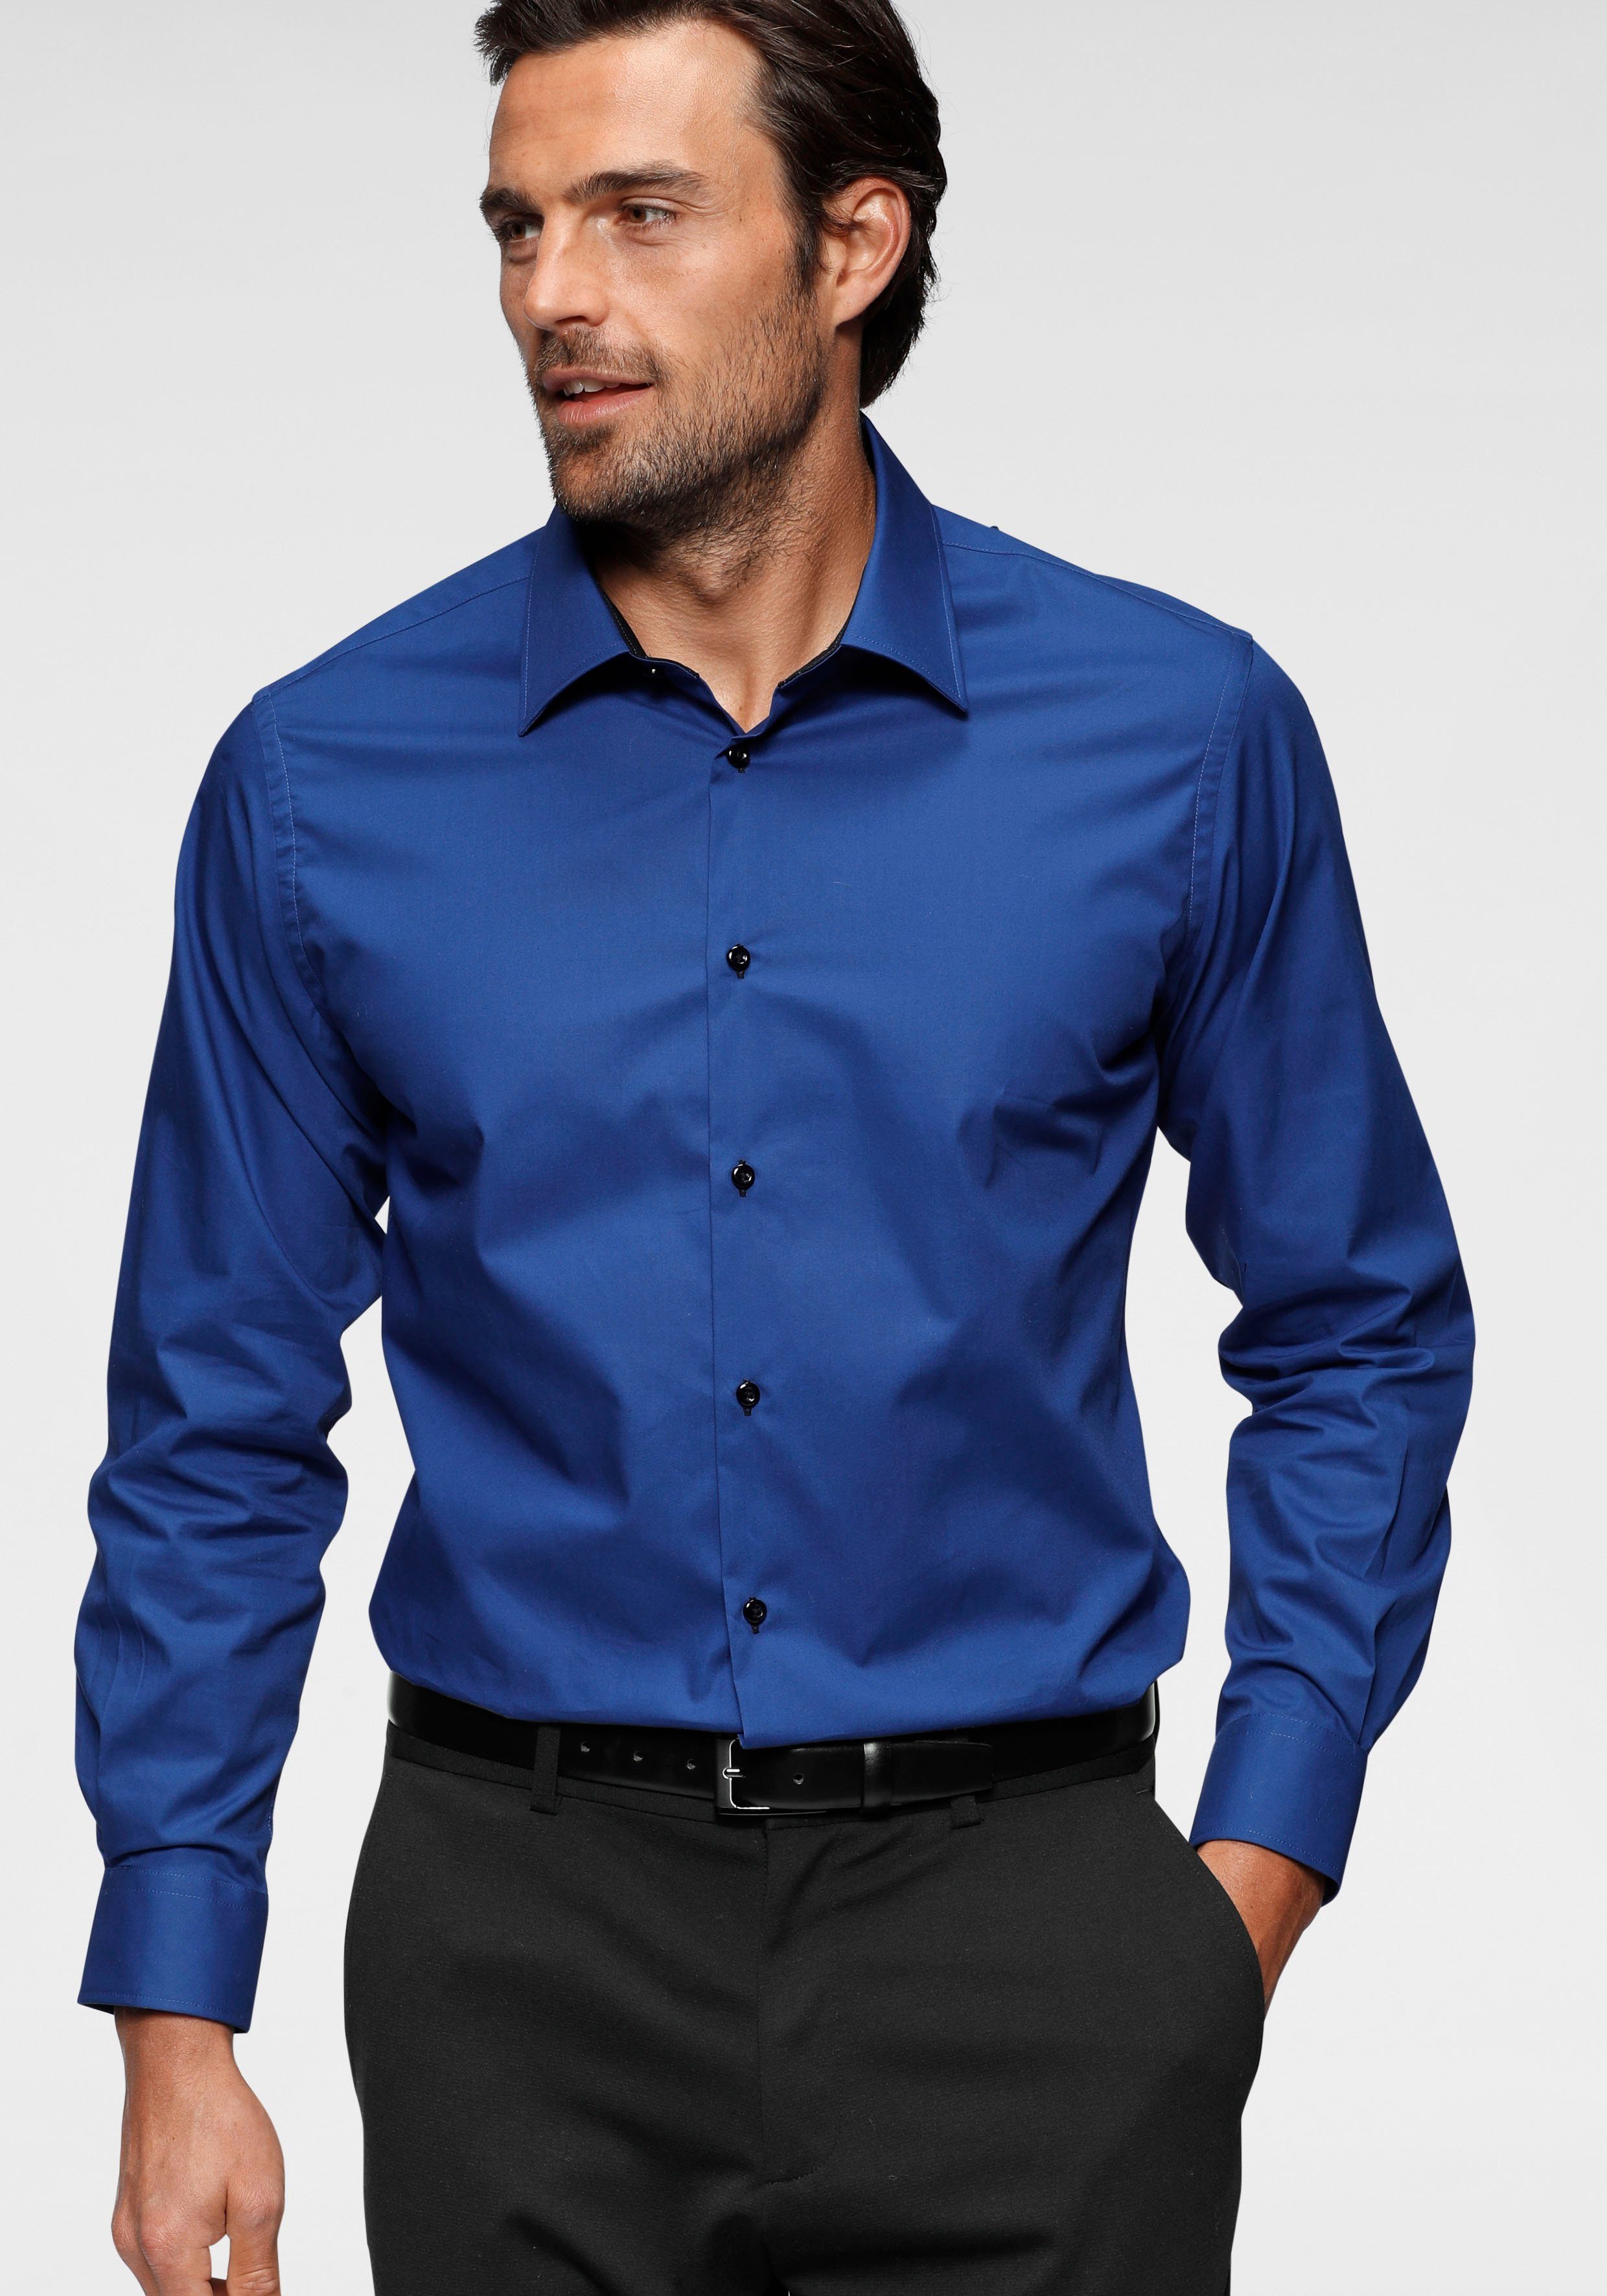 Blaue Satin Hemden für Herren online kaufen | OTTO